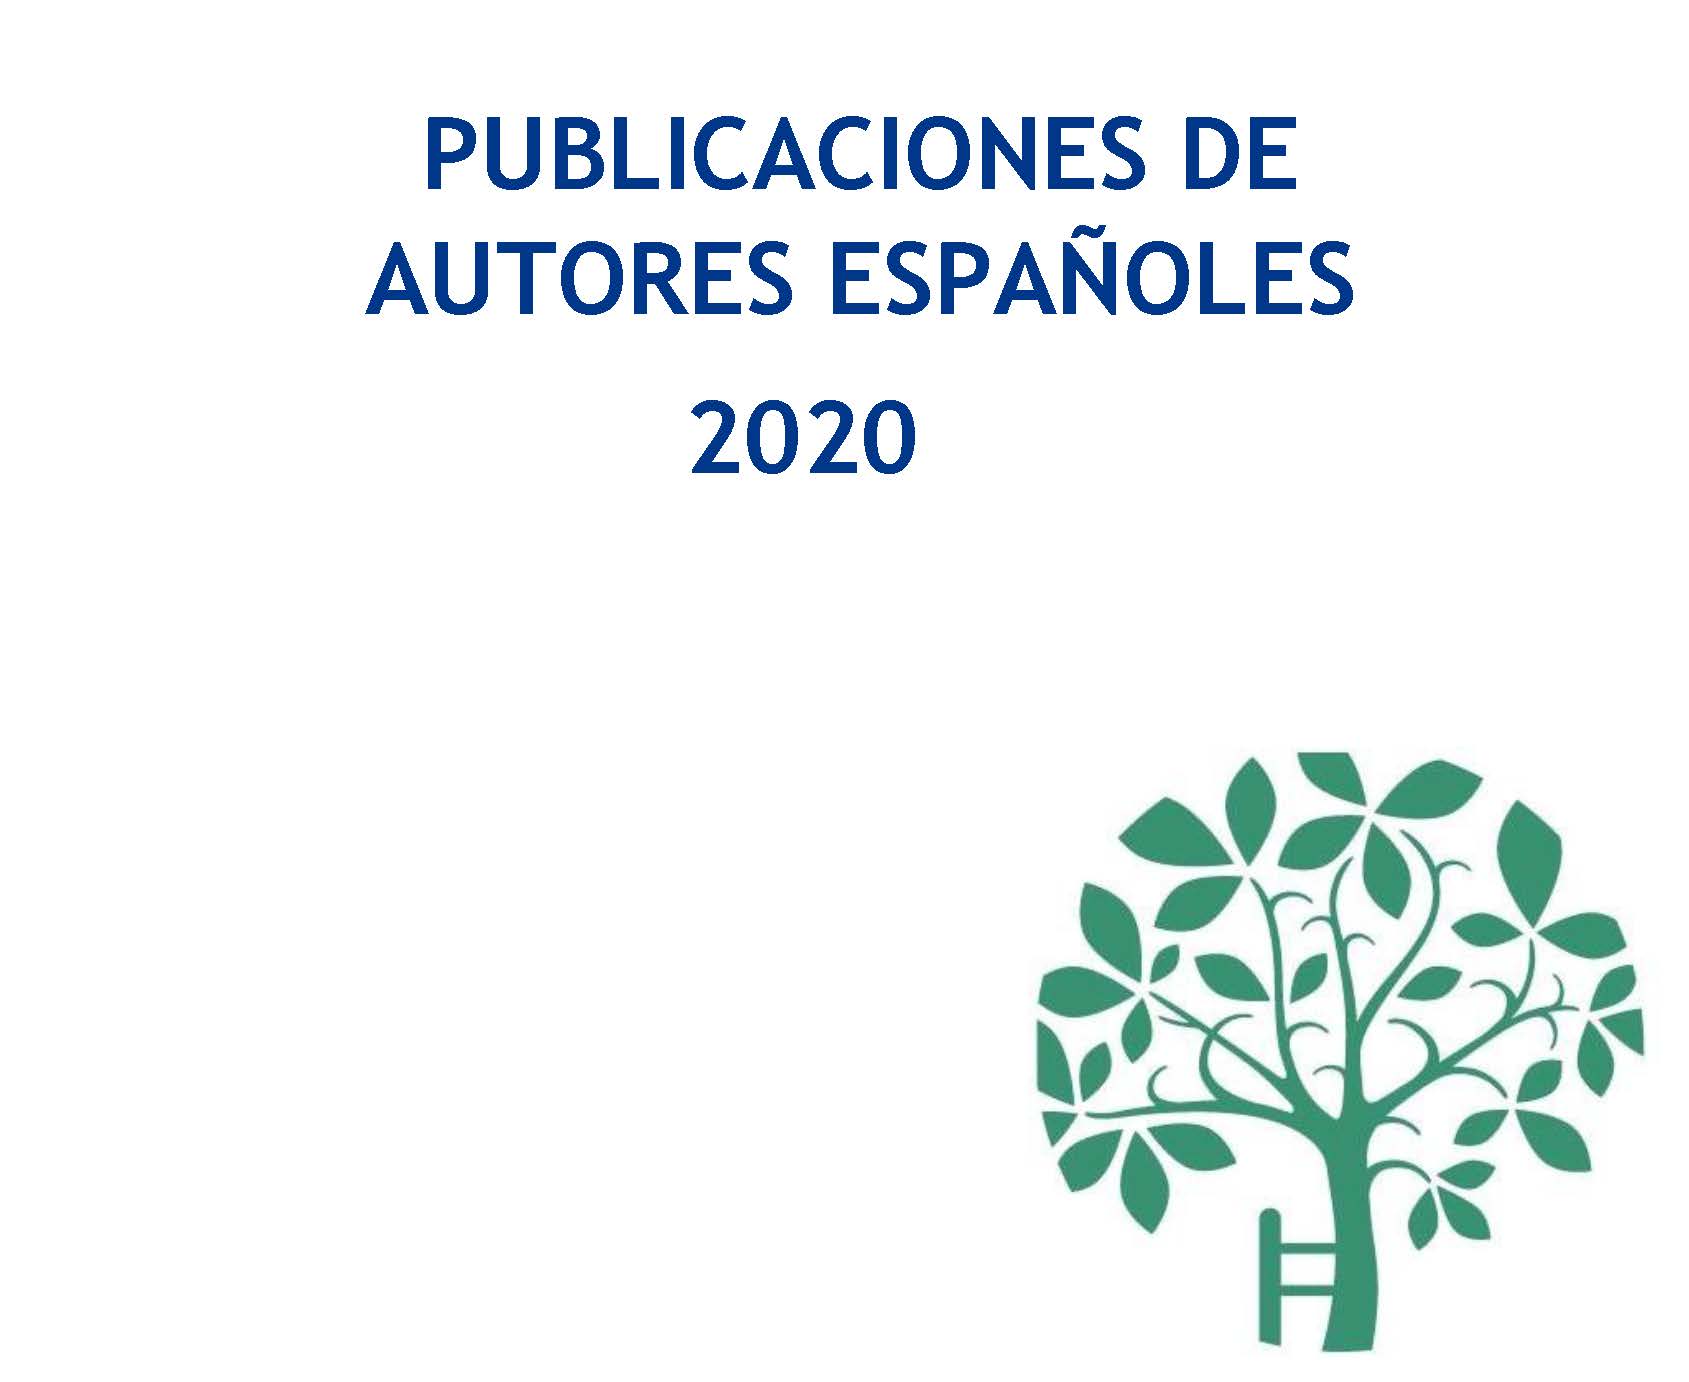 Publicaciones de autores españoles. Segundo semestre 2020